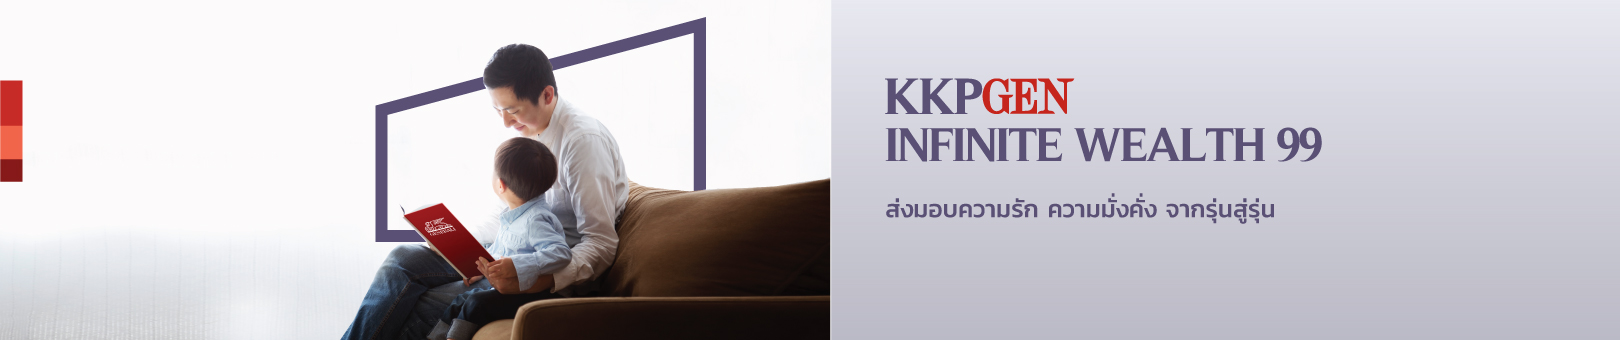 KKPGEN-Infinite-Wealth-99-1620x340px